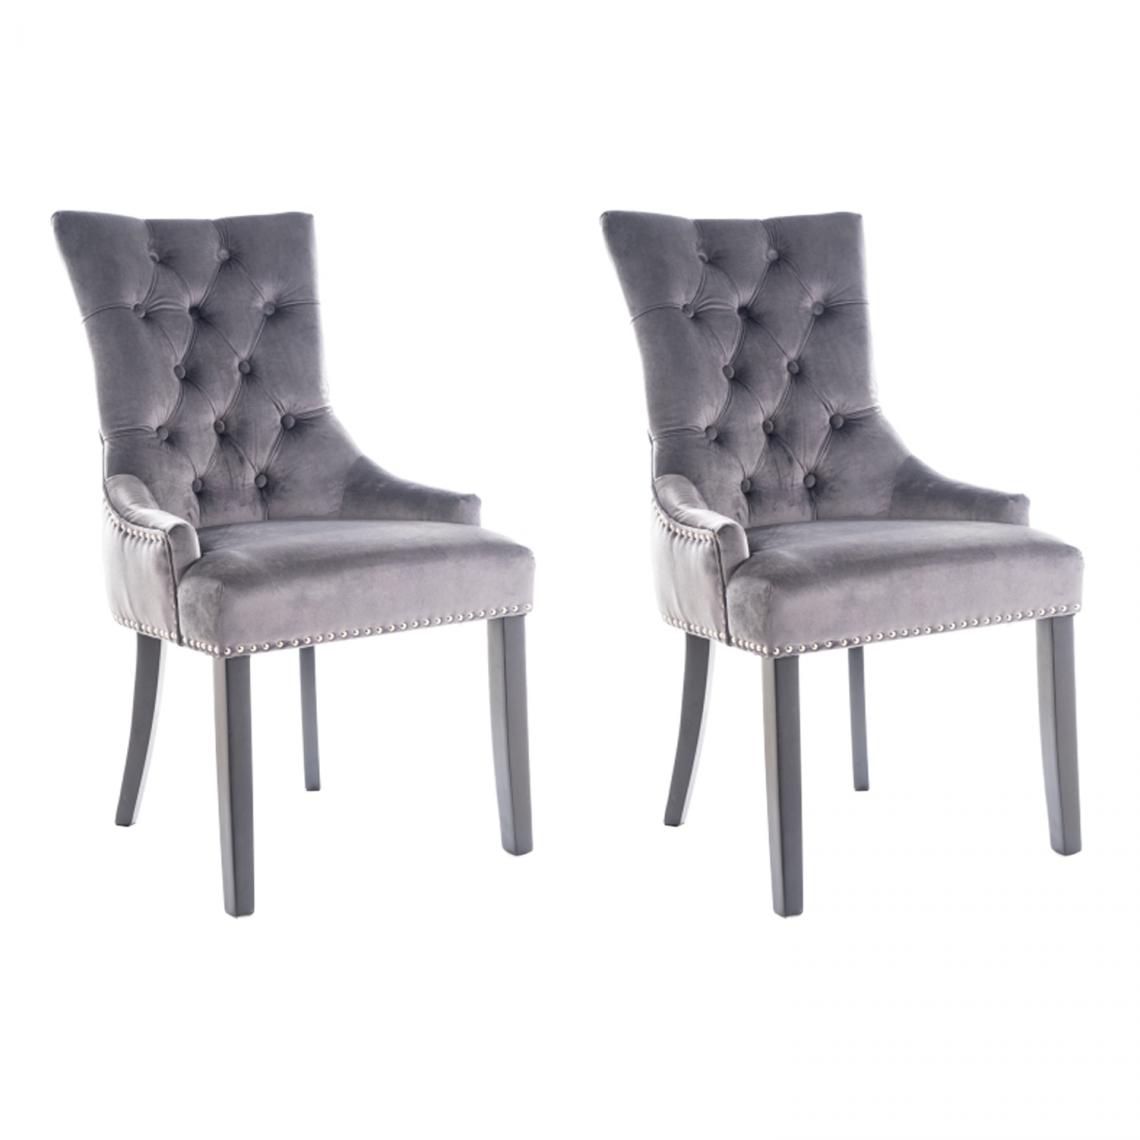 Hucoco - EDWARG - Lot de 2 chaises élégantes - Dimensions 99x55x45 cm - Revêtement en velours - Style glamour - Gris - Chaises